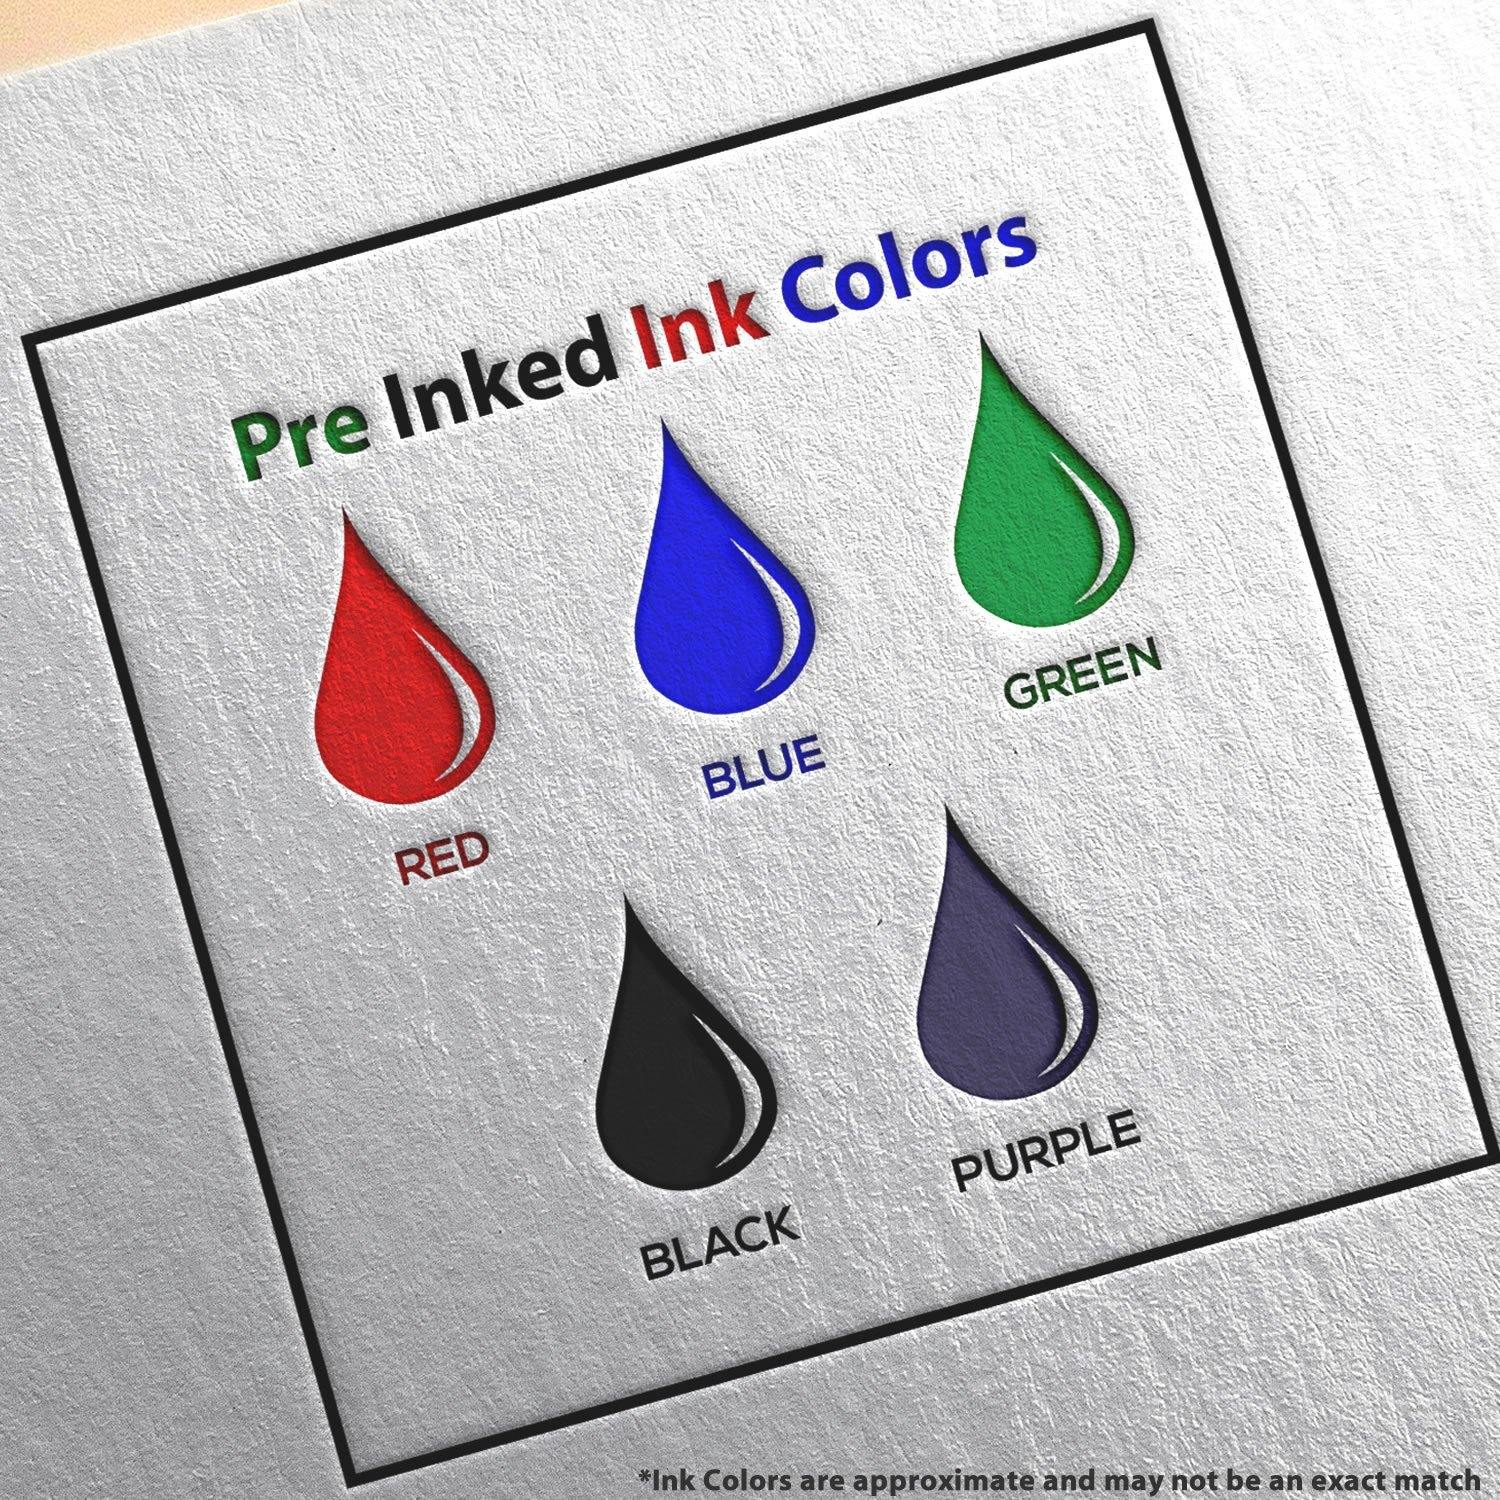 Large Pre Inked File Copy Stamp Ink Color Options